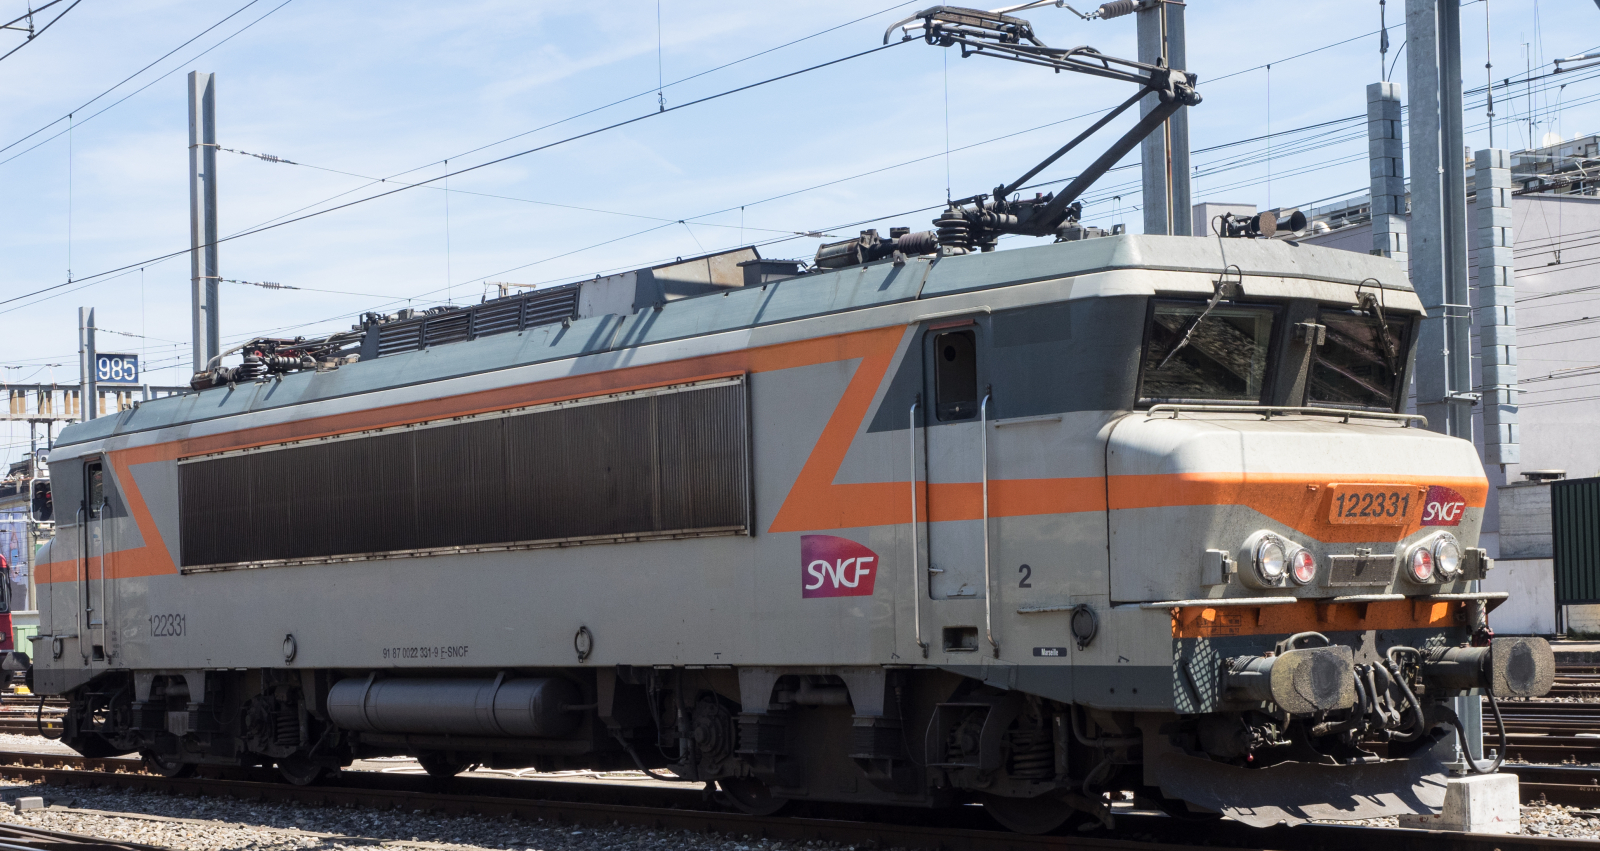 BB 122331 in May 2015 in Geneva